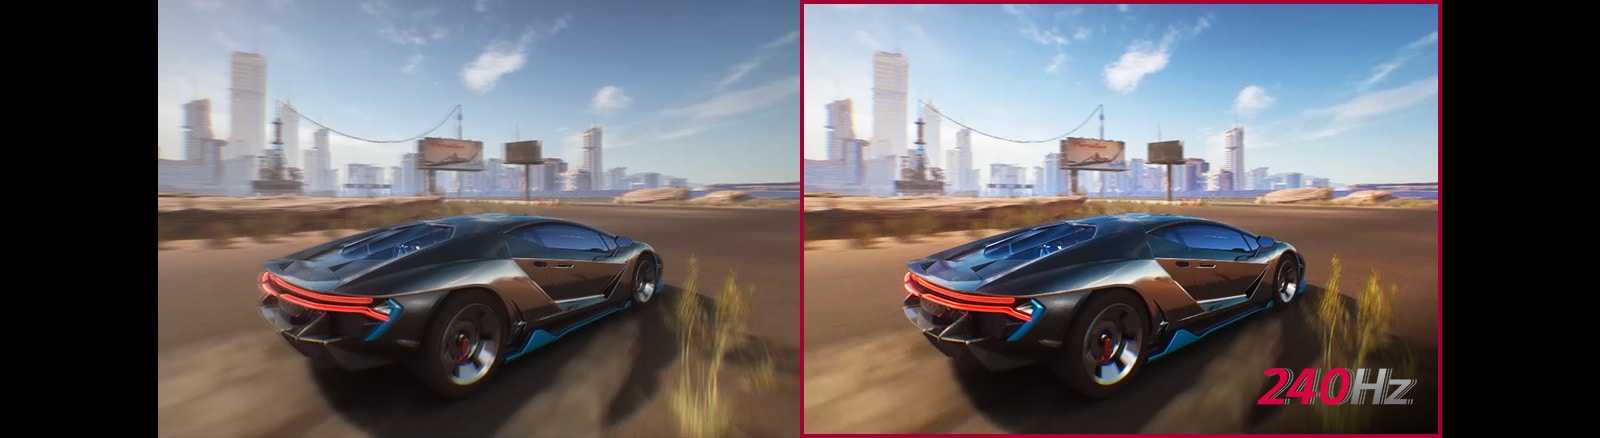 Oyunda seyir halindeki bir arabanın iki karşılaştırmalı animasyonunu gösteriyor. İki animasyon aynı görünüyor. Fakat 240 Hz yenileme hızı uygulanmamış olan ilk animasyonun netliği diğerine kıyasla daha az.